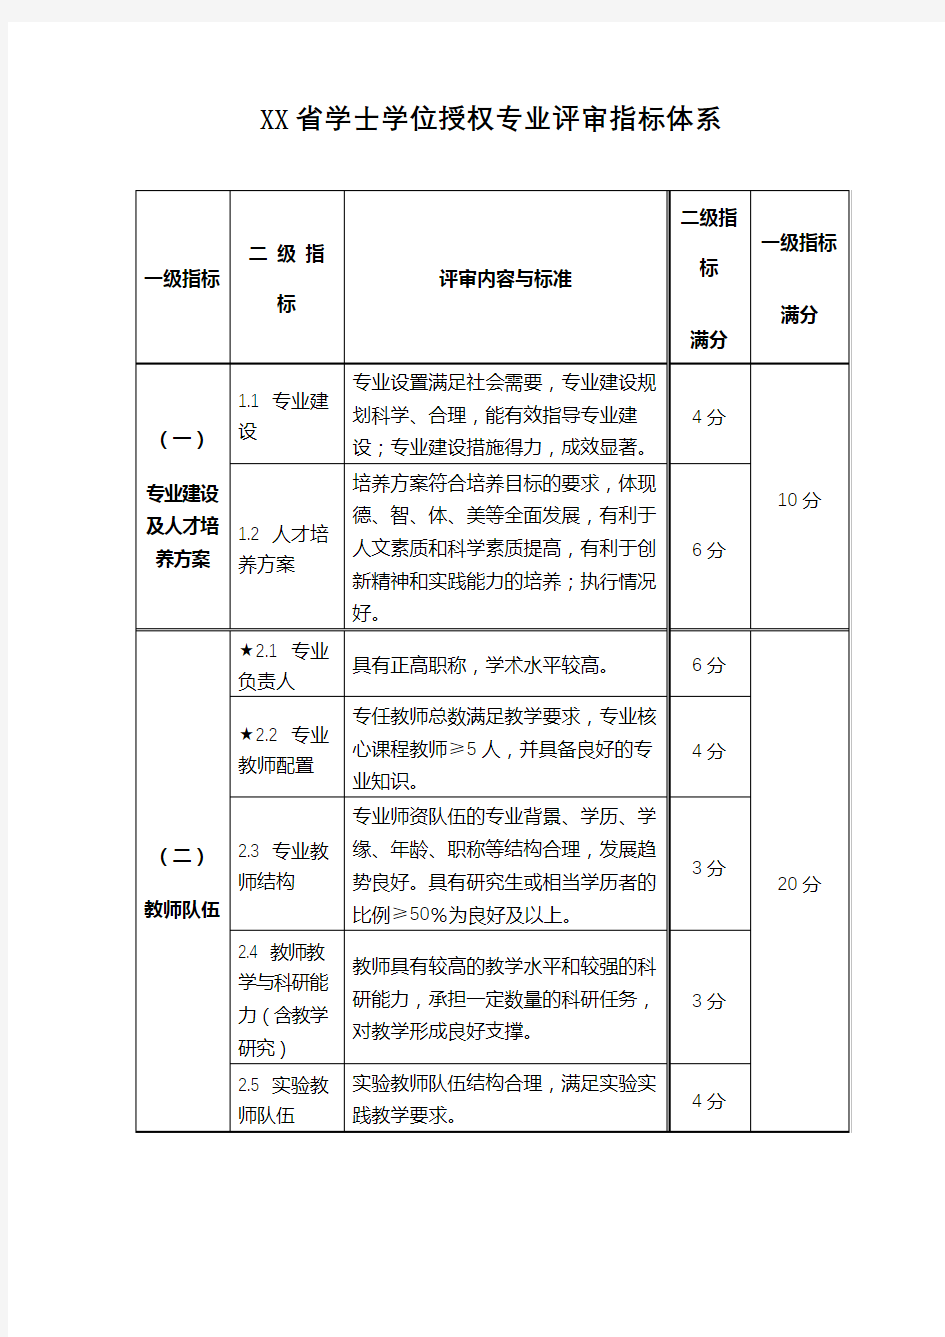 省学士学位授权专业评审指标体系【模板】